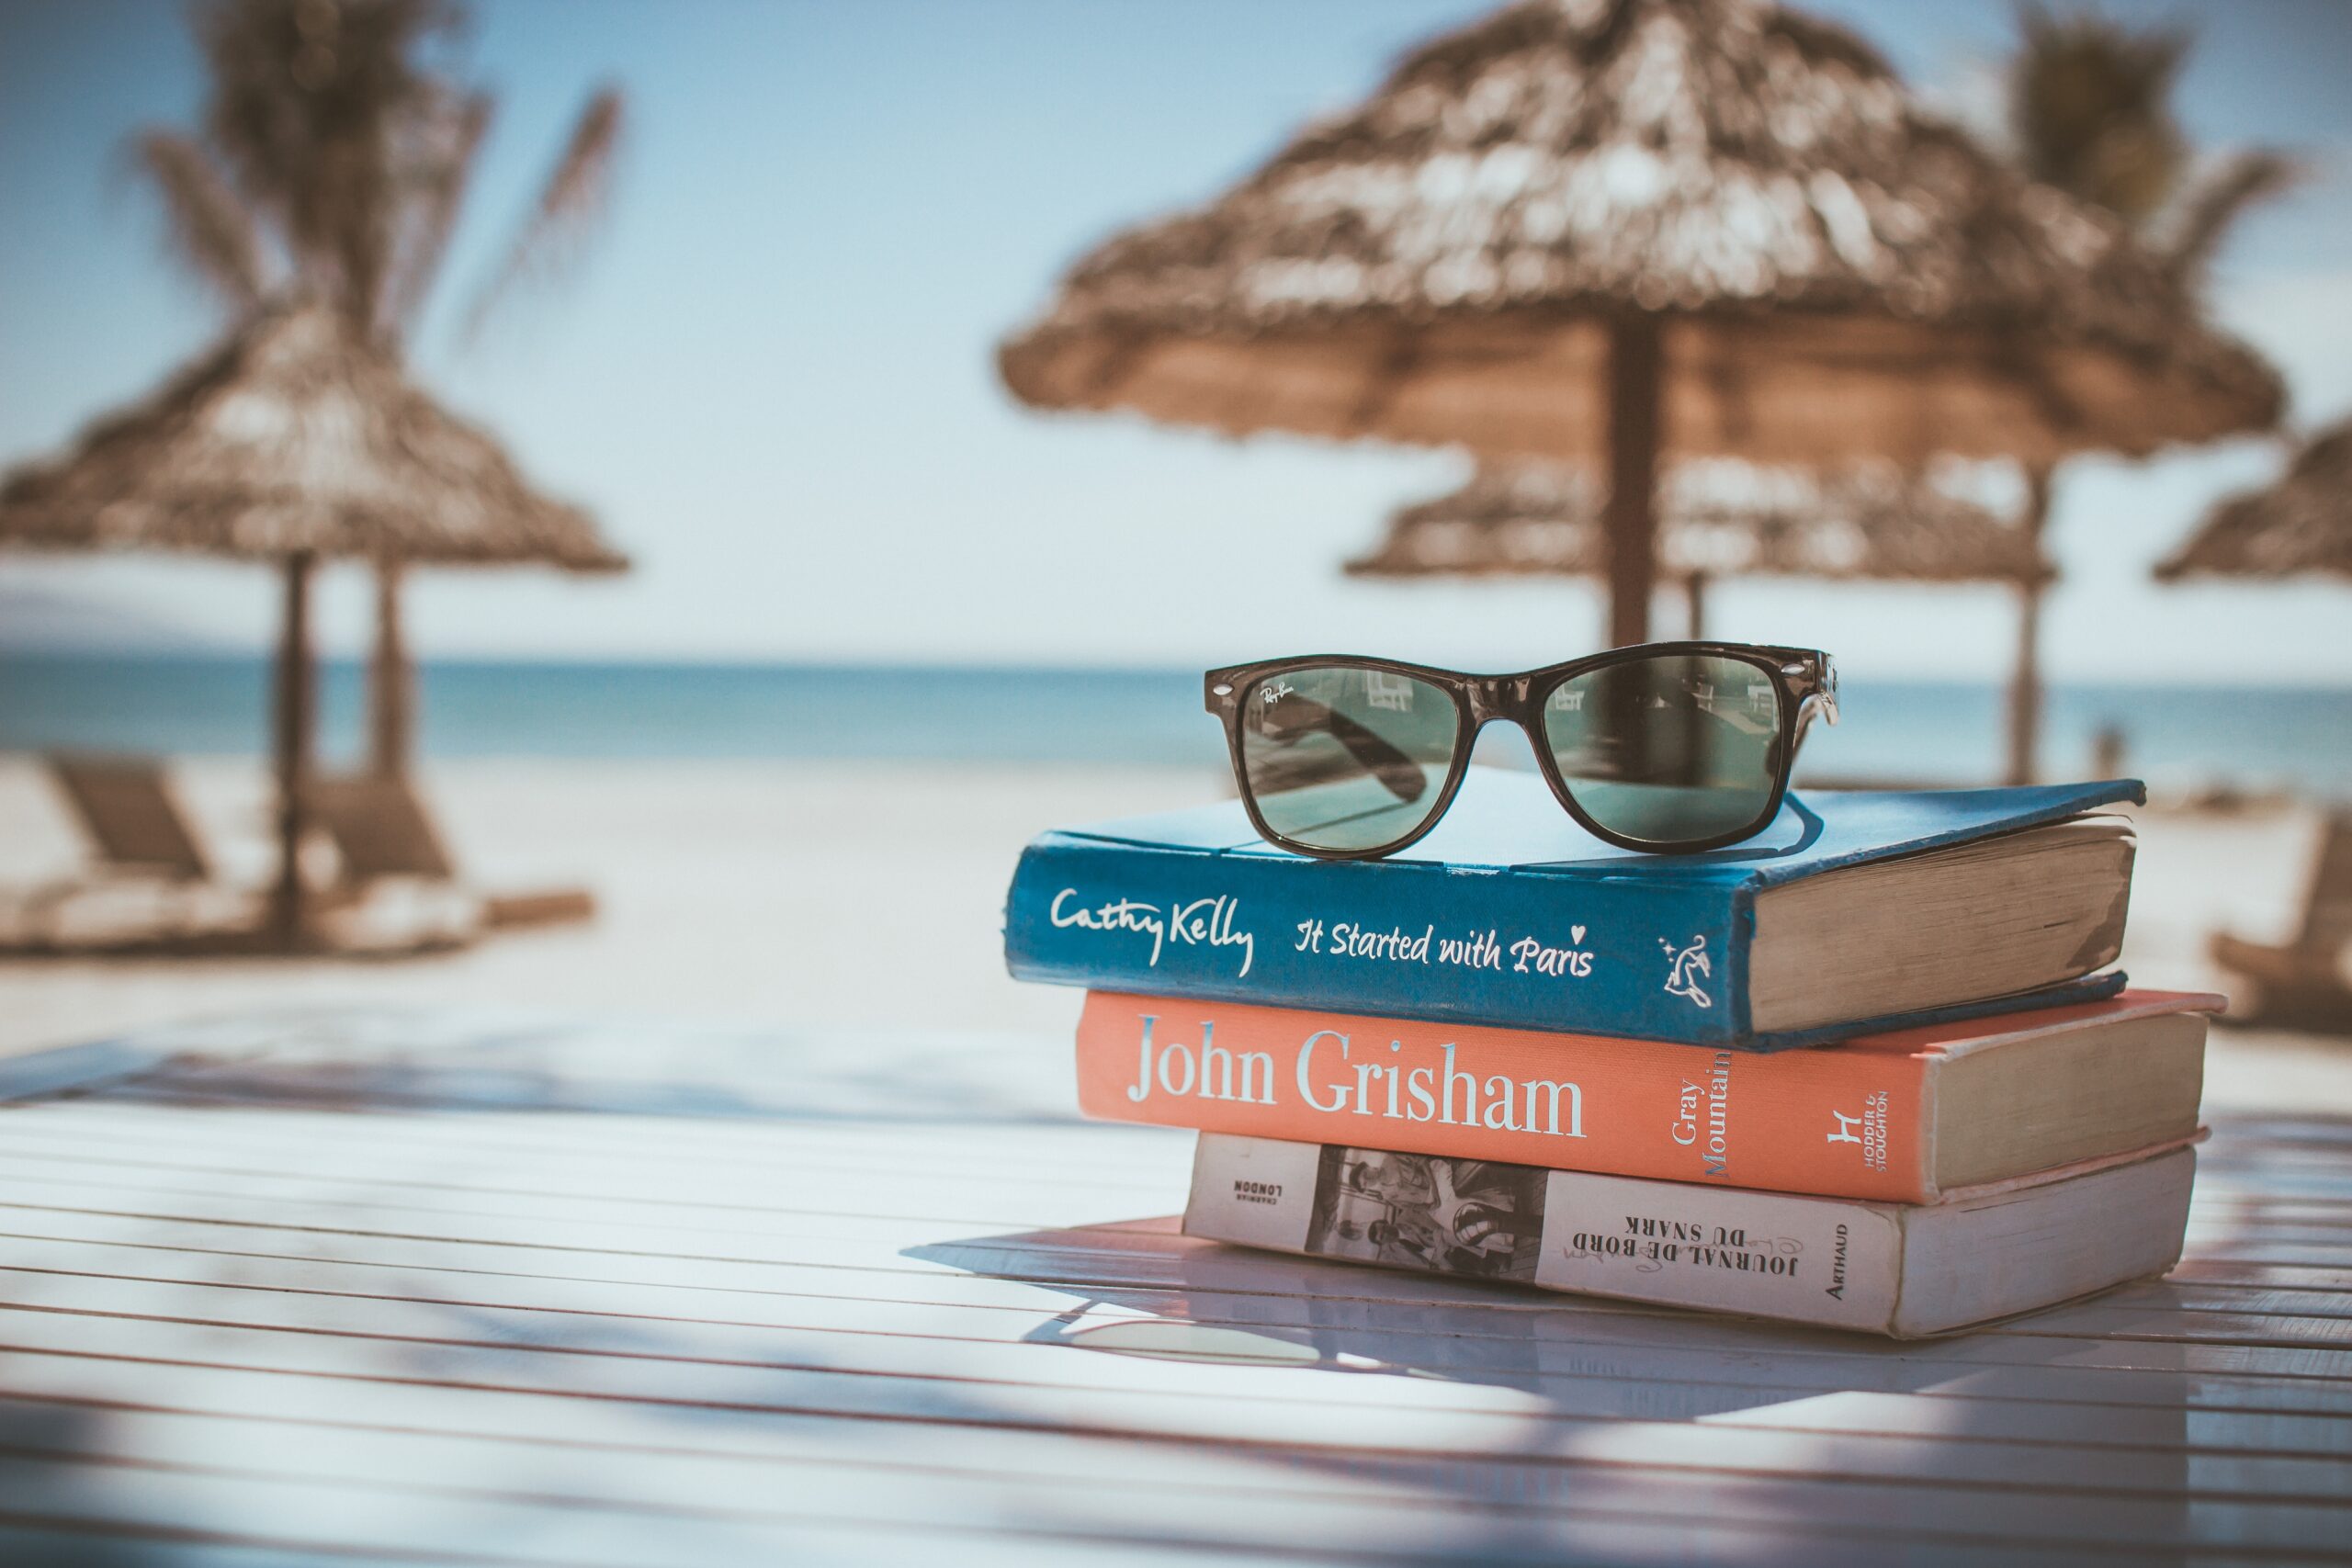 Bild über Bücherstapel am Strand mit Sonnenbrille obendrauf. Im Hintergrund Sonnenschirme